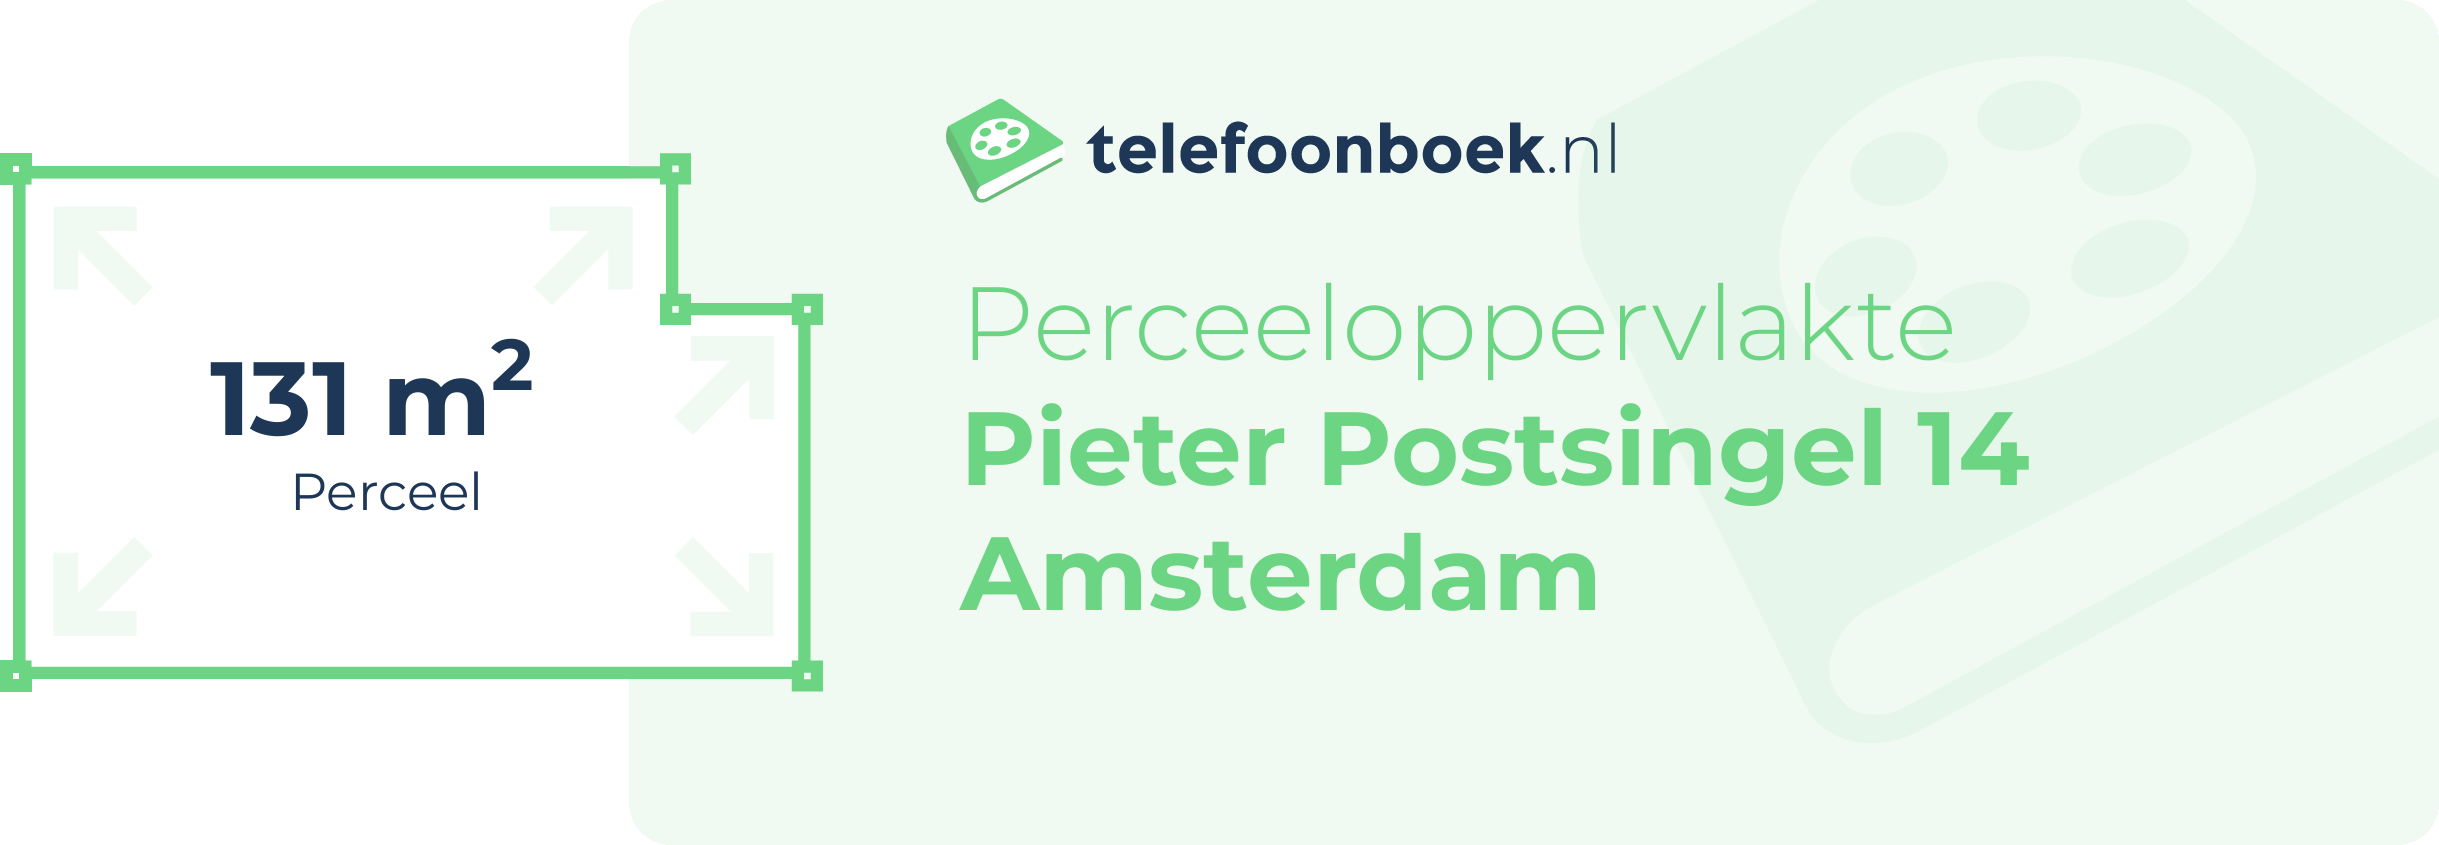 Perceeloppervlakte Pieter Postsingel 14 Amsterdam